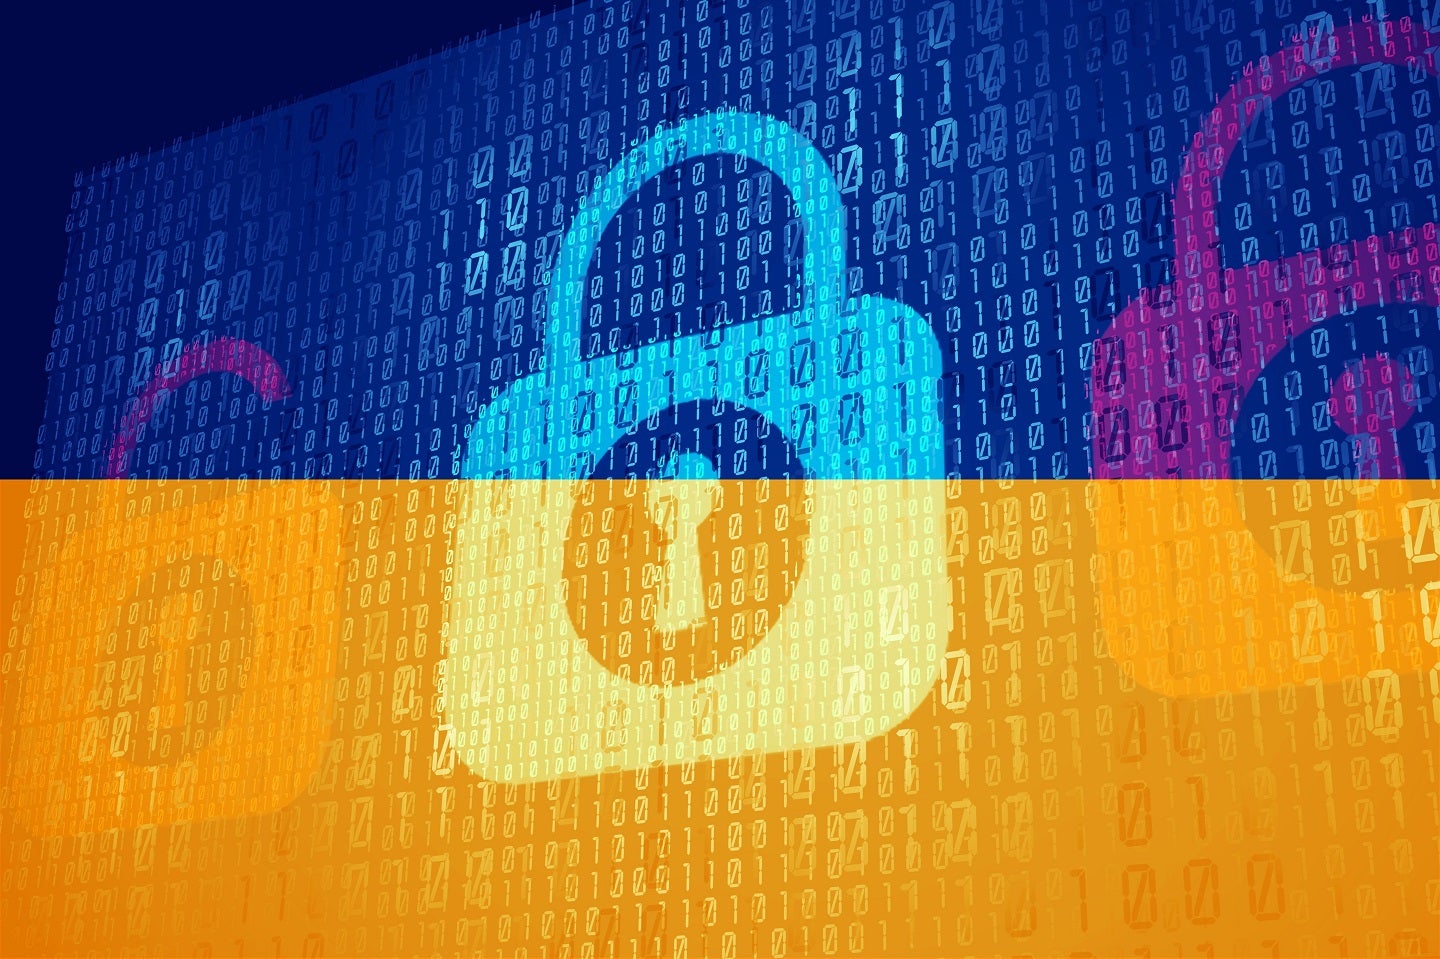 Señal: La fuerza laboral en ciberseguridad aumenta a medida que Ucrania frustra el ciberataque ruso